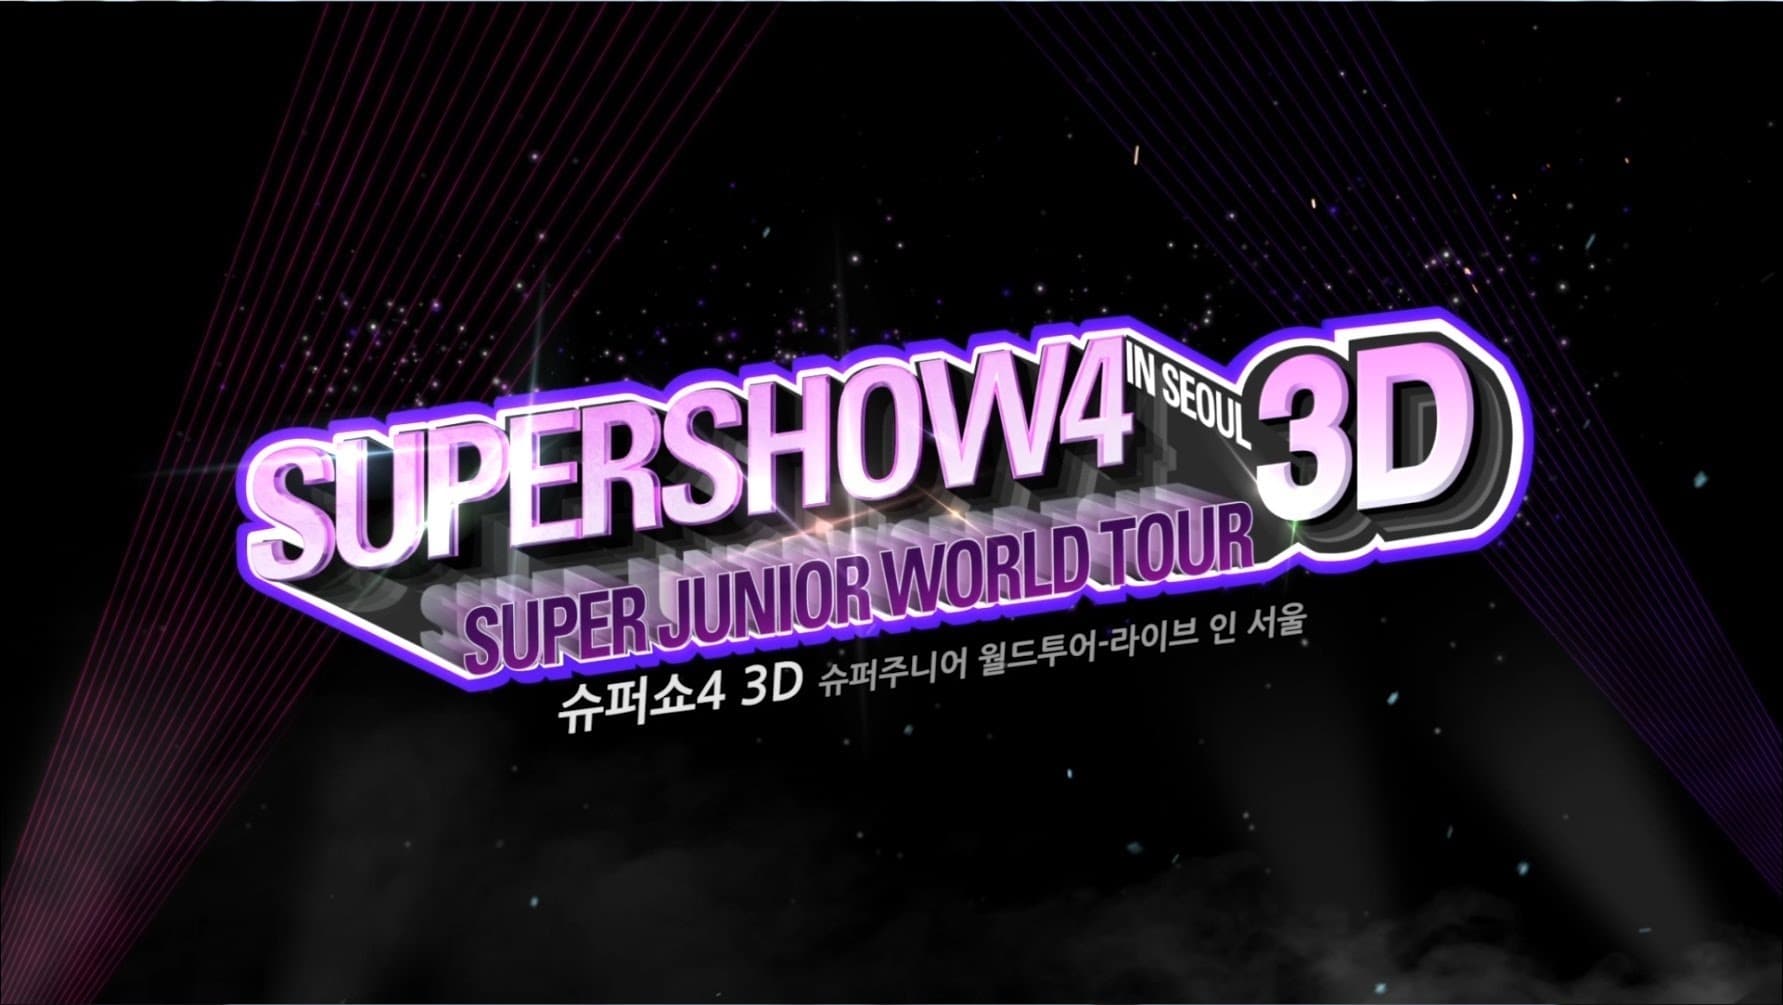 superjunior supershow4 live in seoul 3d